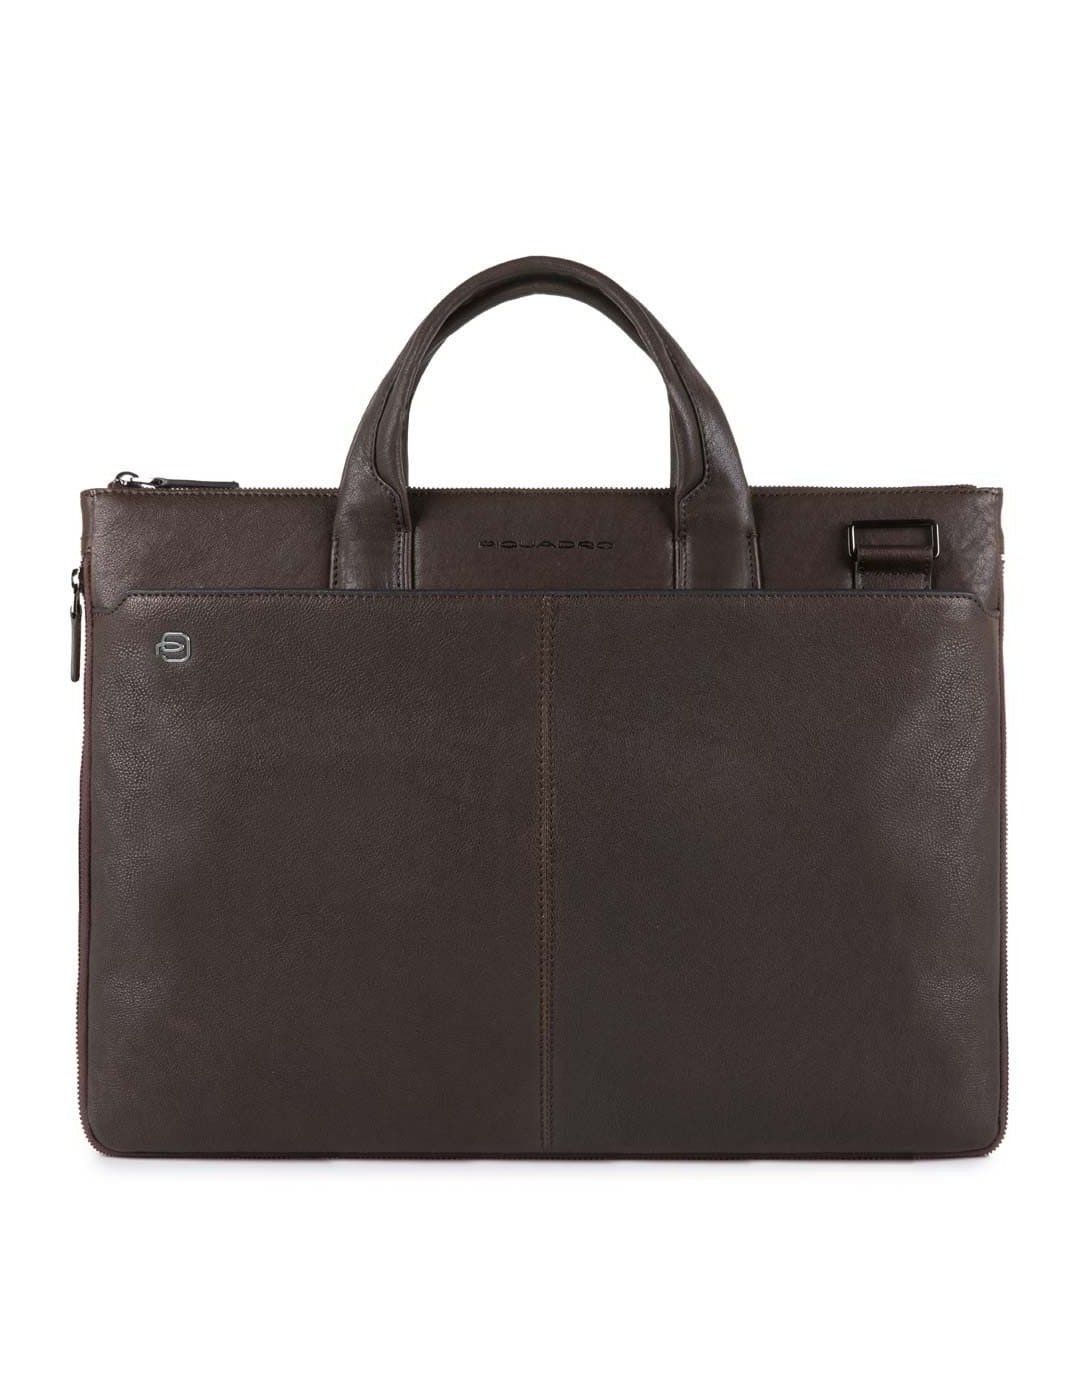 Narrow, expandable laptop bag Piquadro Black Square 15.6 inches